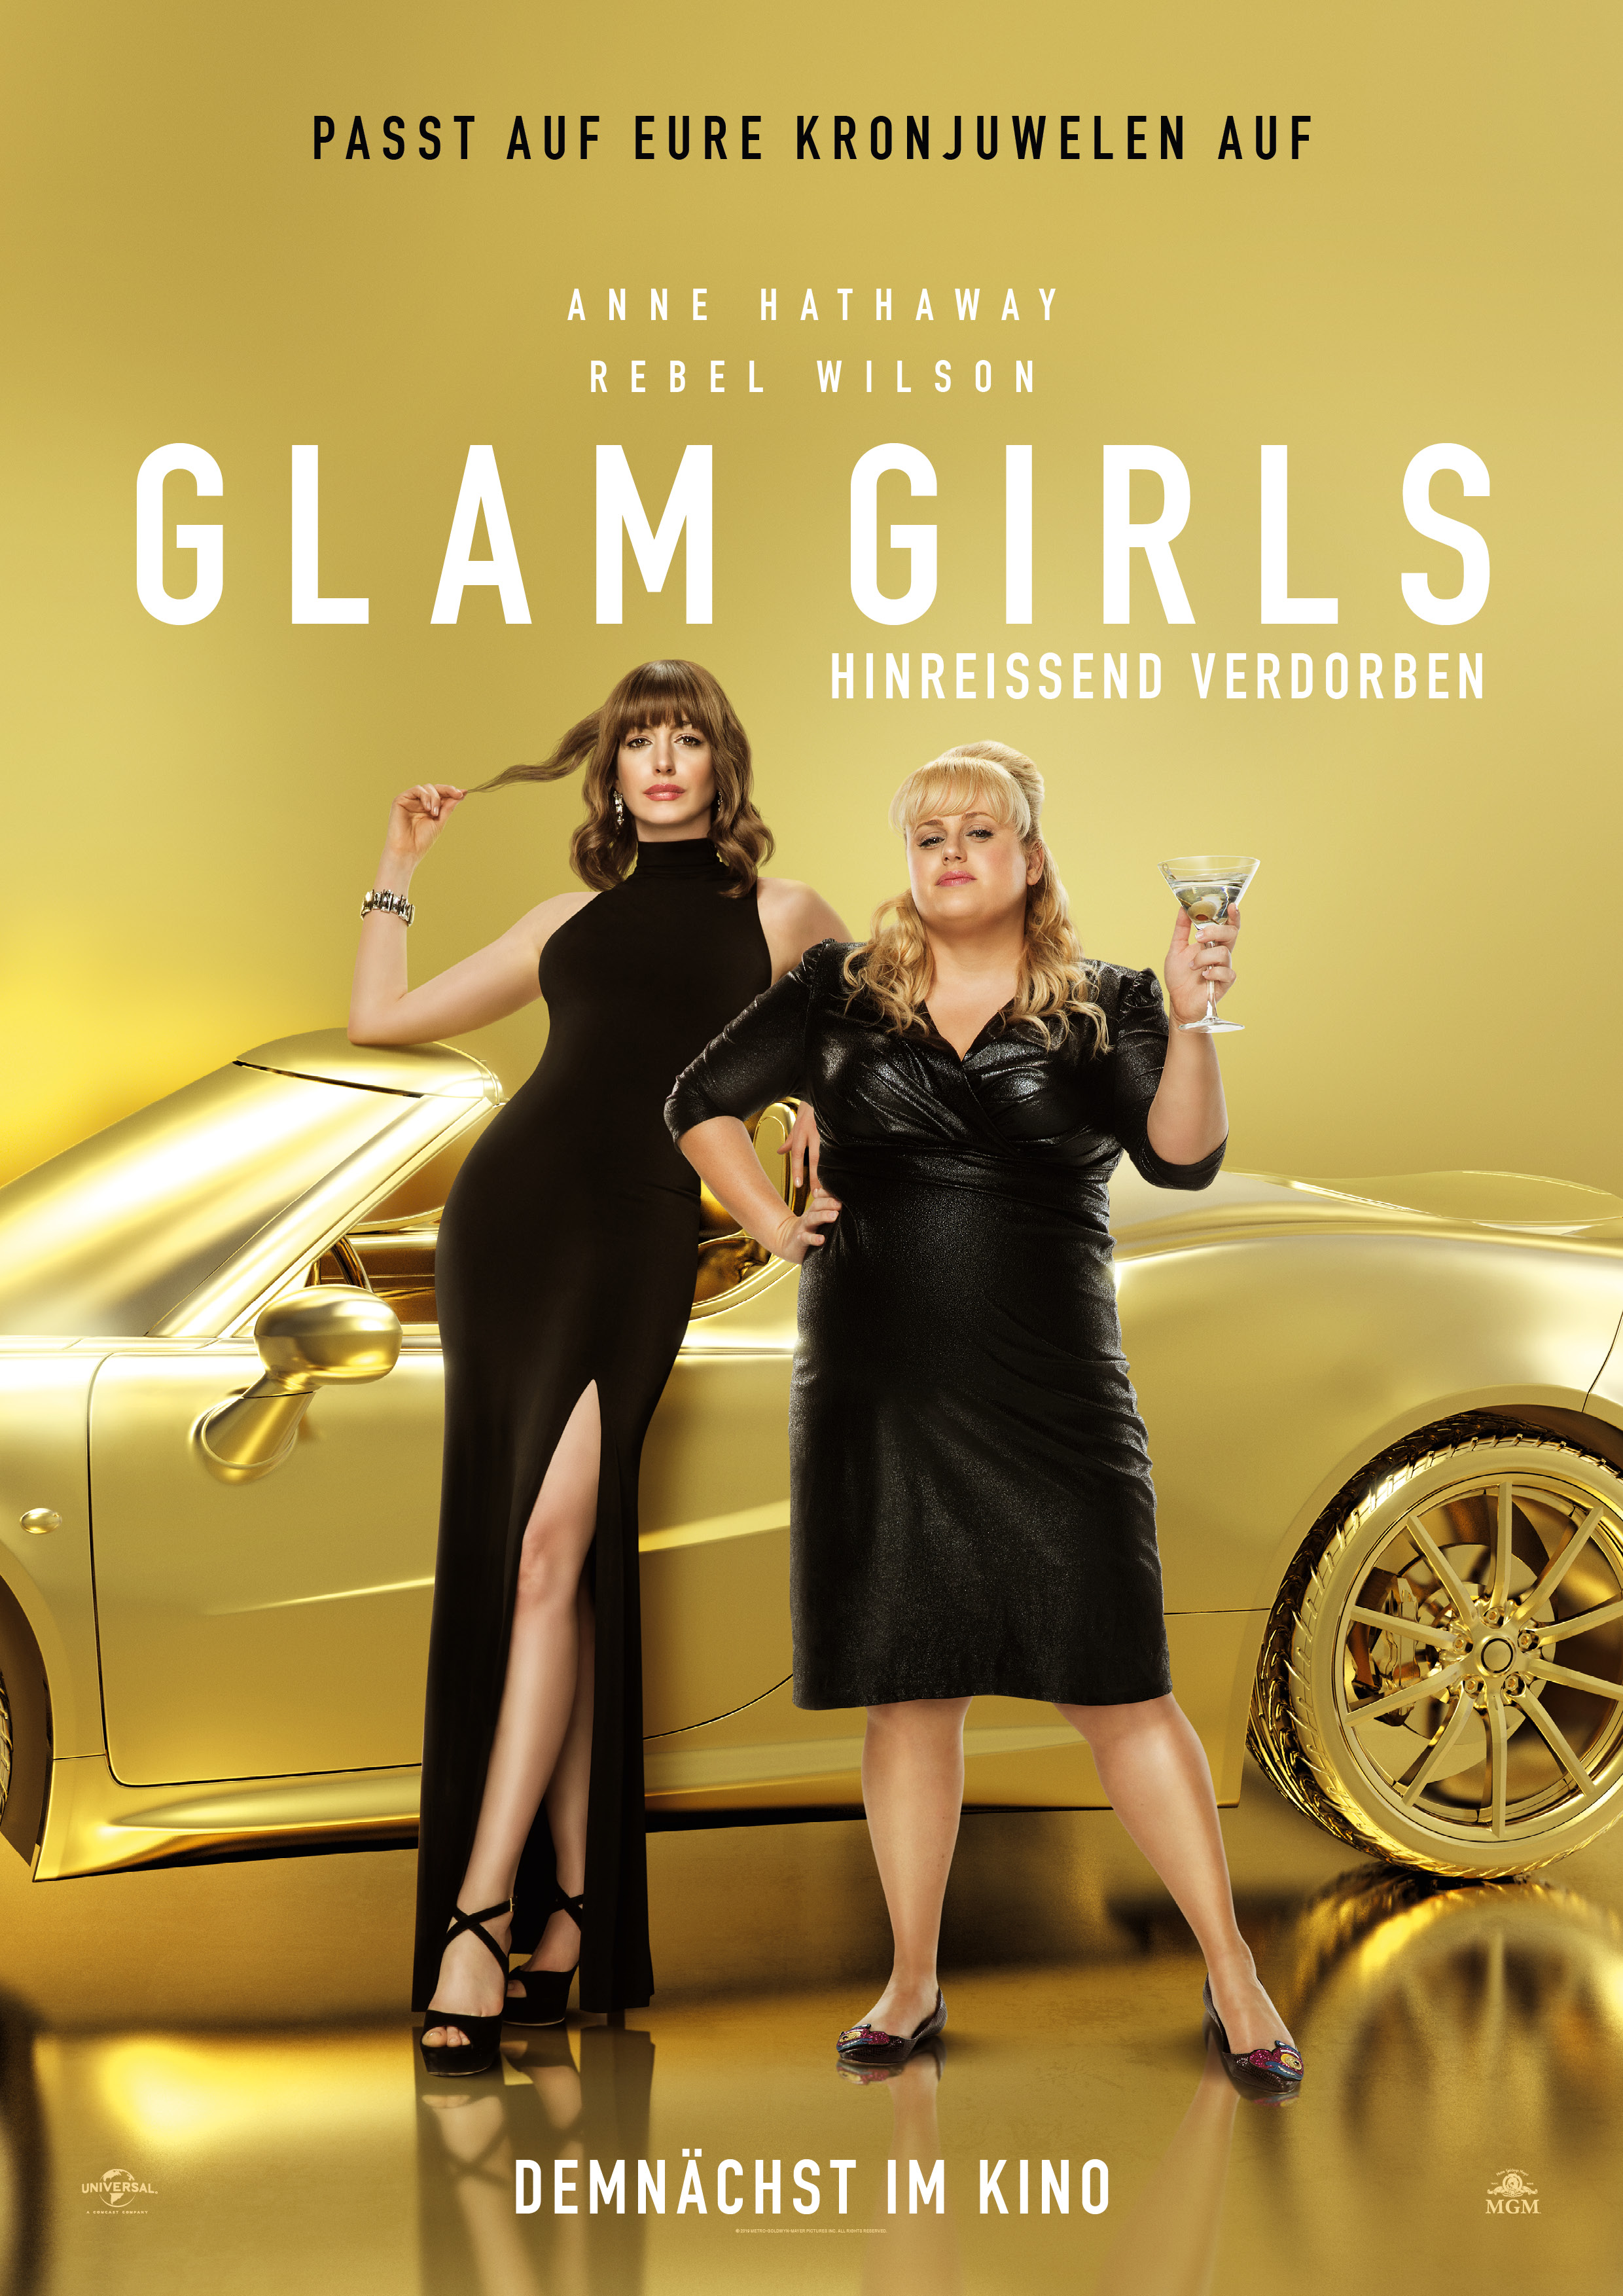 Glam Girls Hinreissend Verdorben Film 2018 Trailer